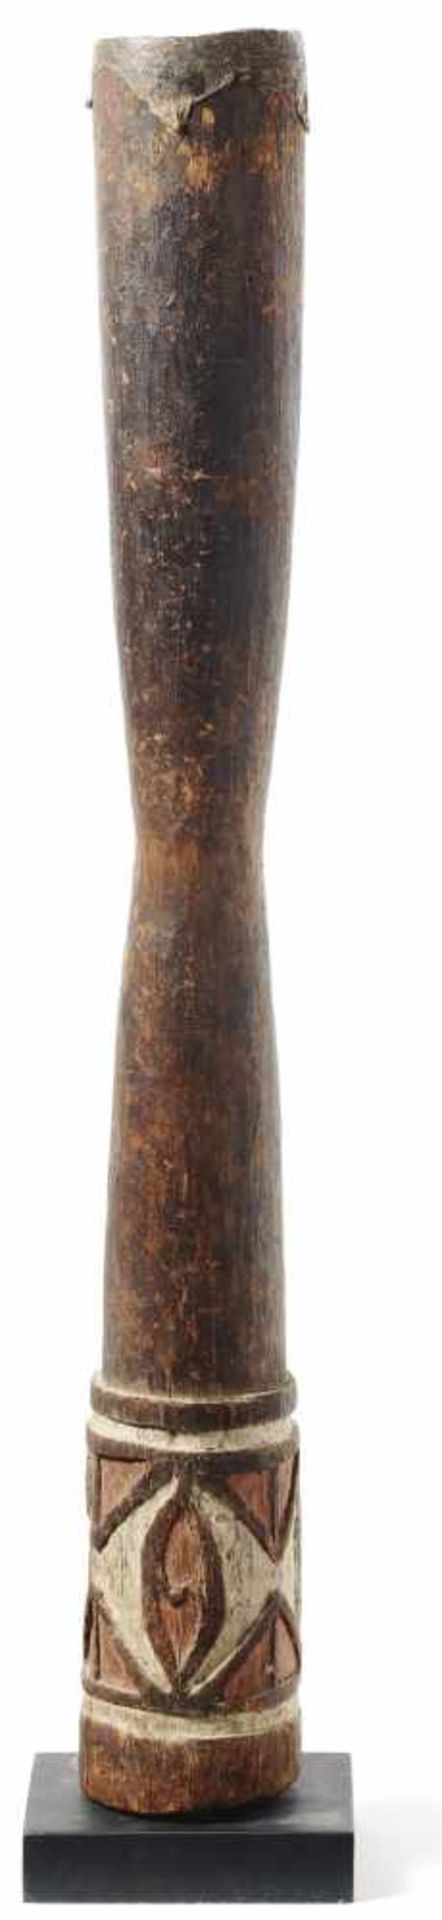 Krieger- oder Jagd-BuschtrommelPapua-Neuguinea, Marind-anim-KopfjägerSchlanke Standtrommel mit